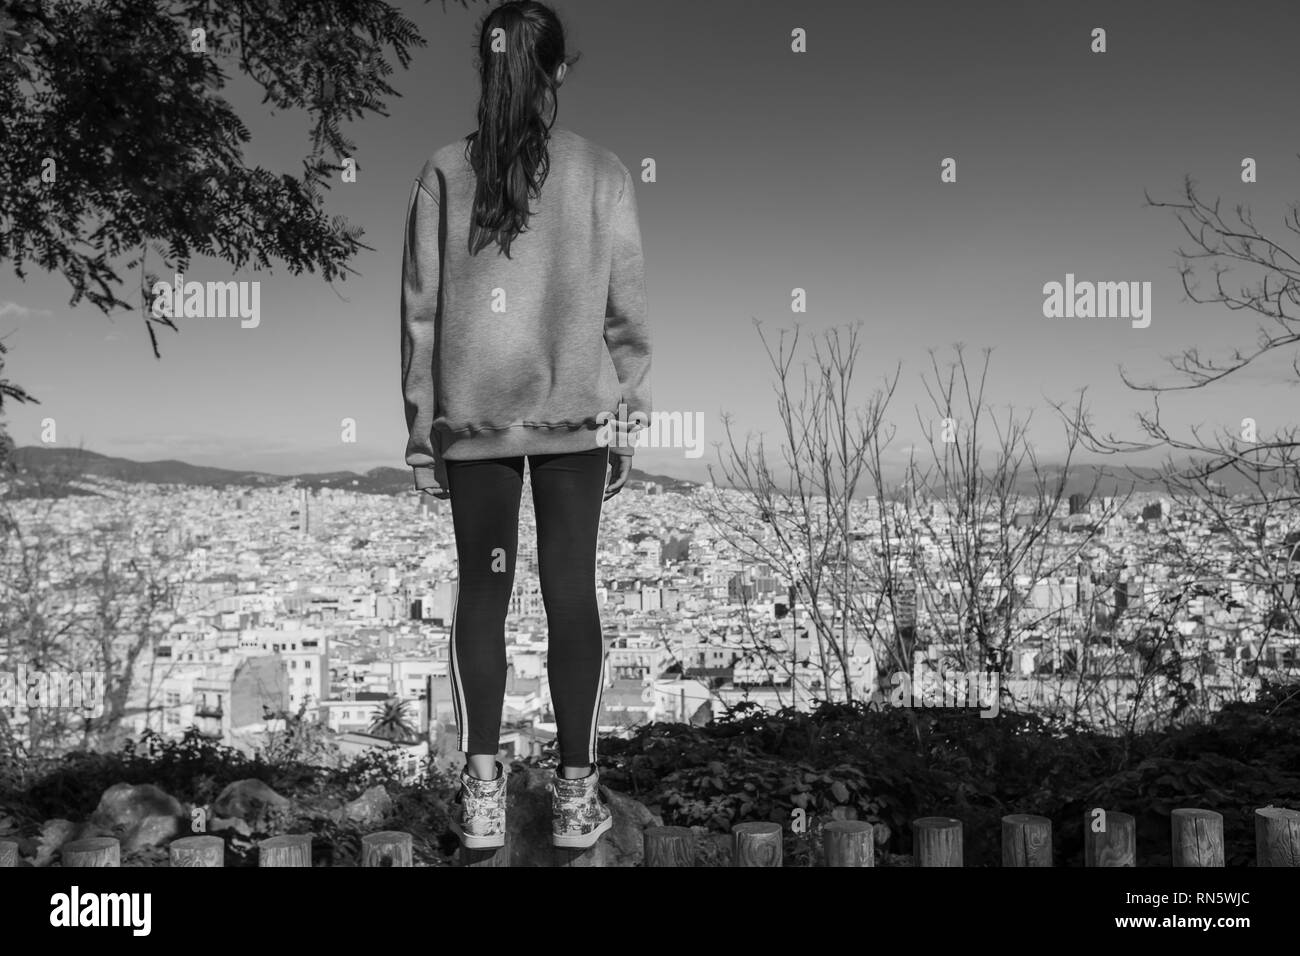 Zurück Blick auf das junge Mädchen genießen den Blick auf die Stadt Barcelona von den Gärten des Dichters Jacinto Verdaguer, Montjuic, Spanien gewidmet. Stockfoto